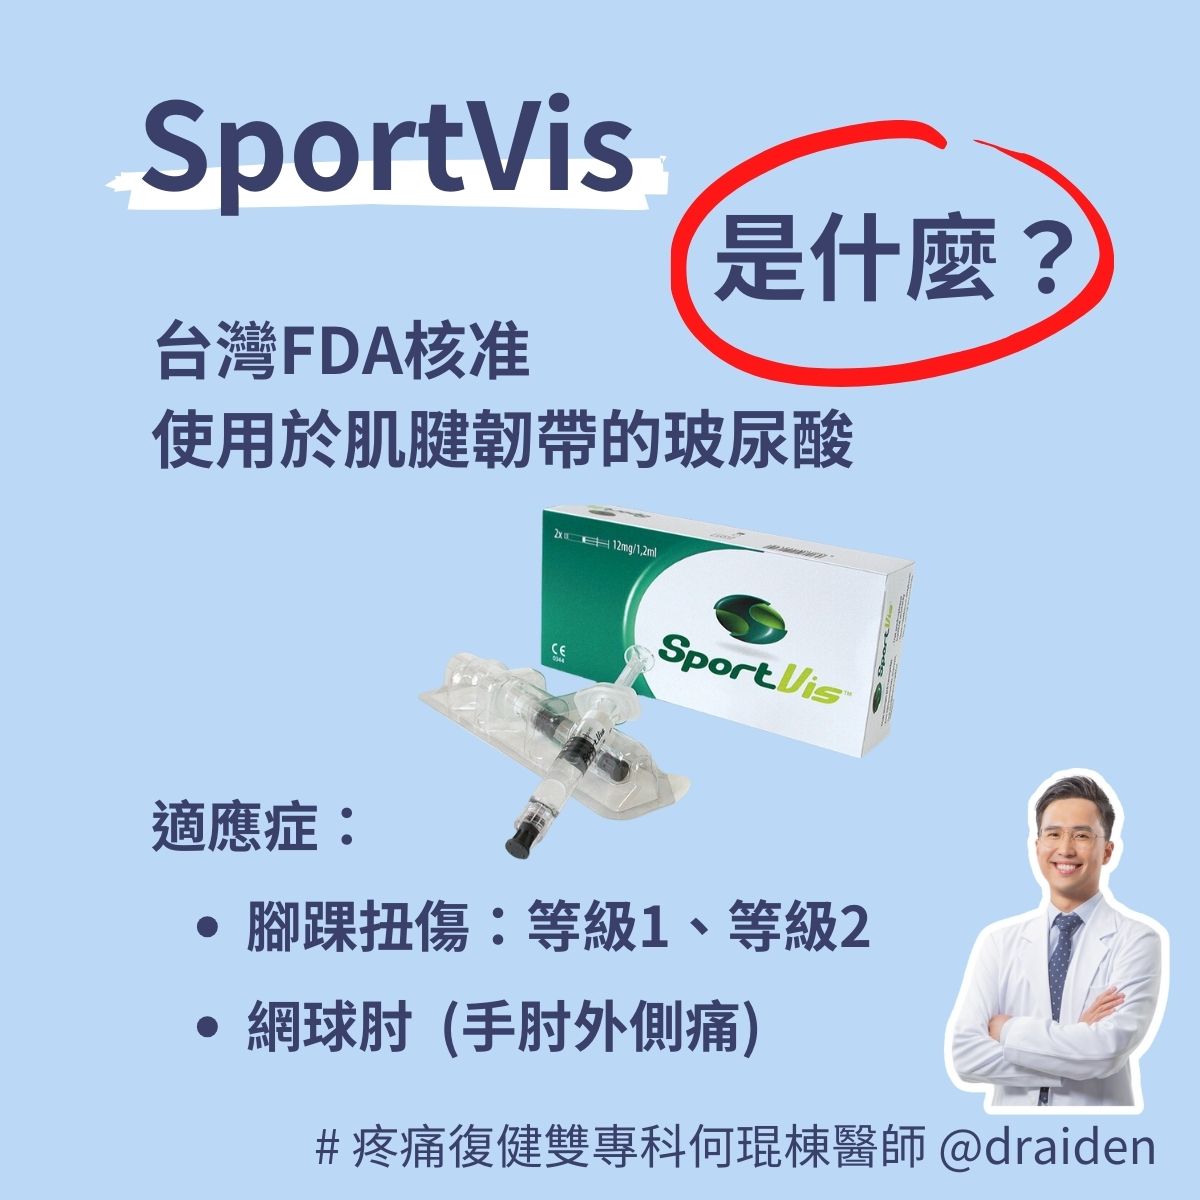 SportVis 玻尿酸，台灣TFDA核准使用於治療腳踝扭傷與網球肘